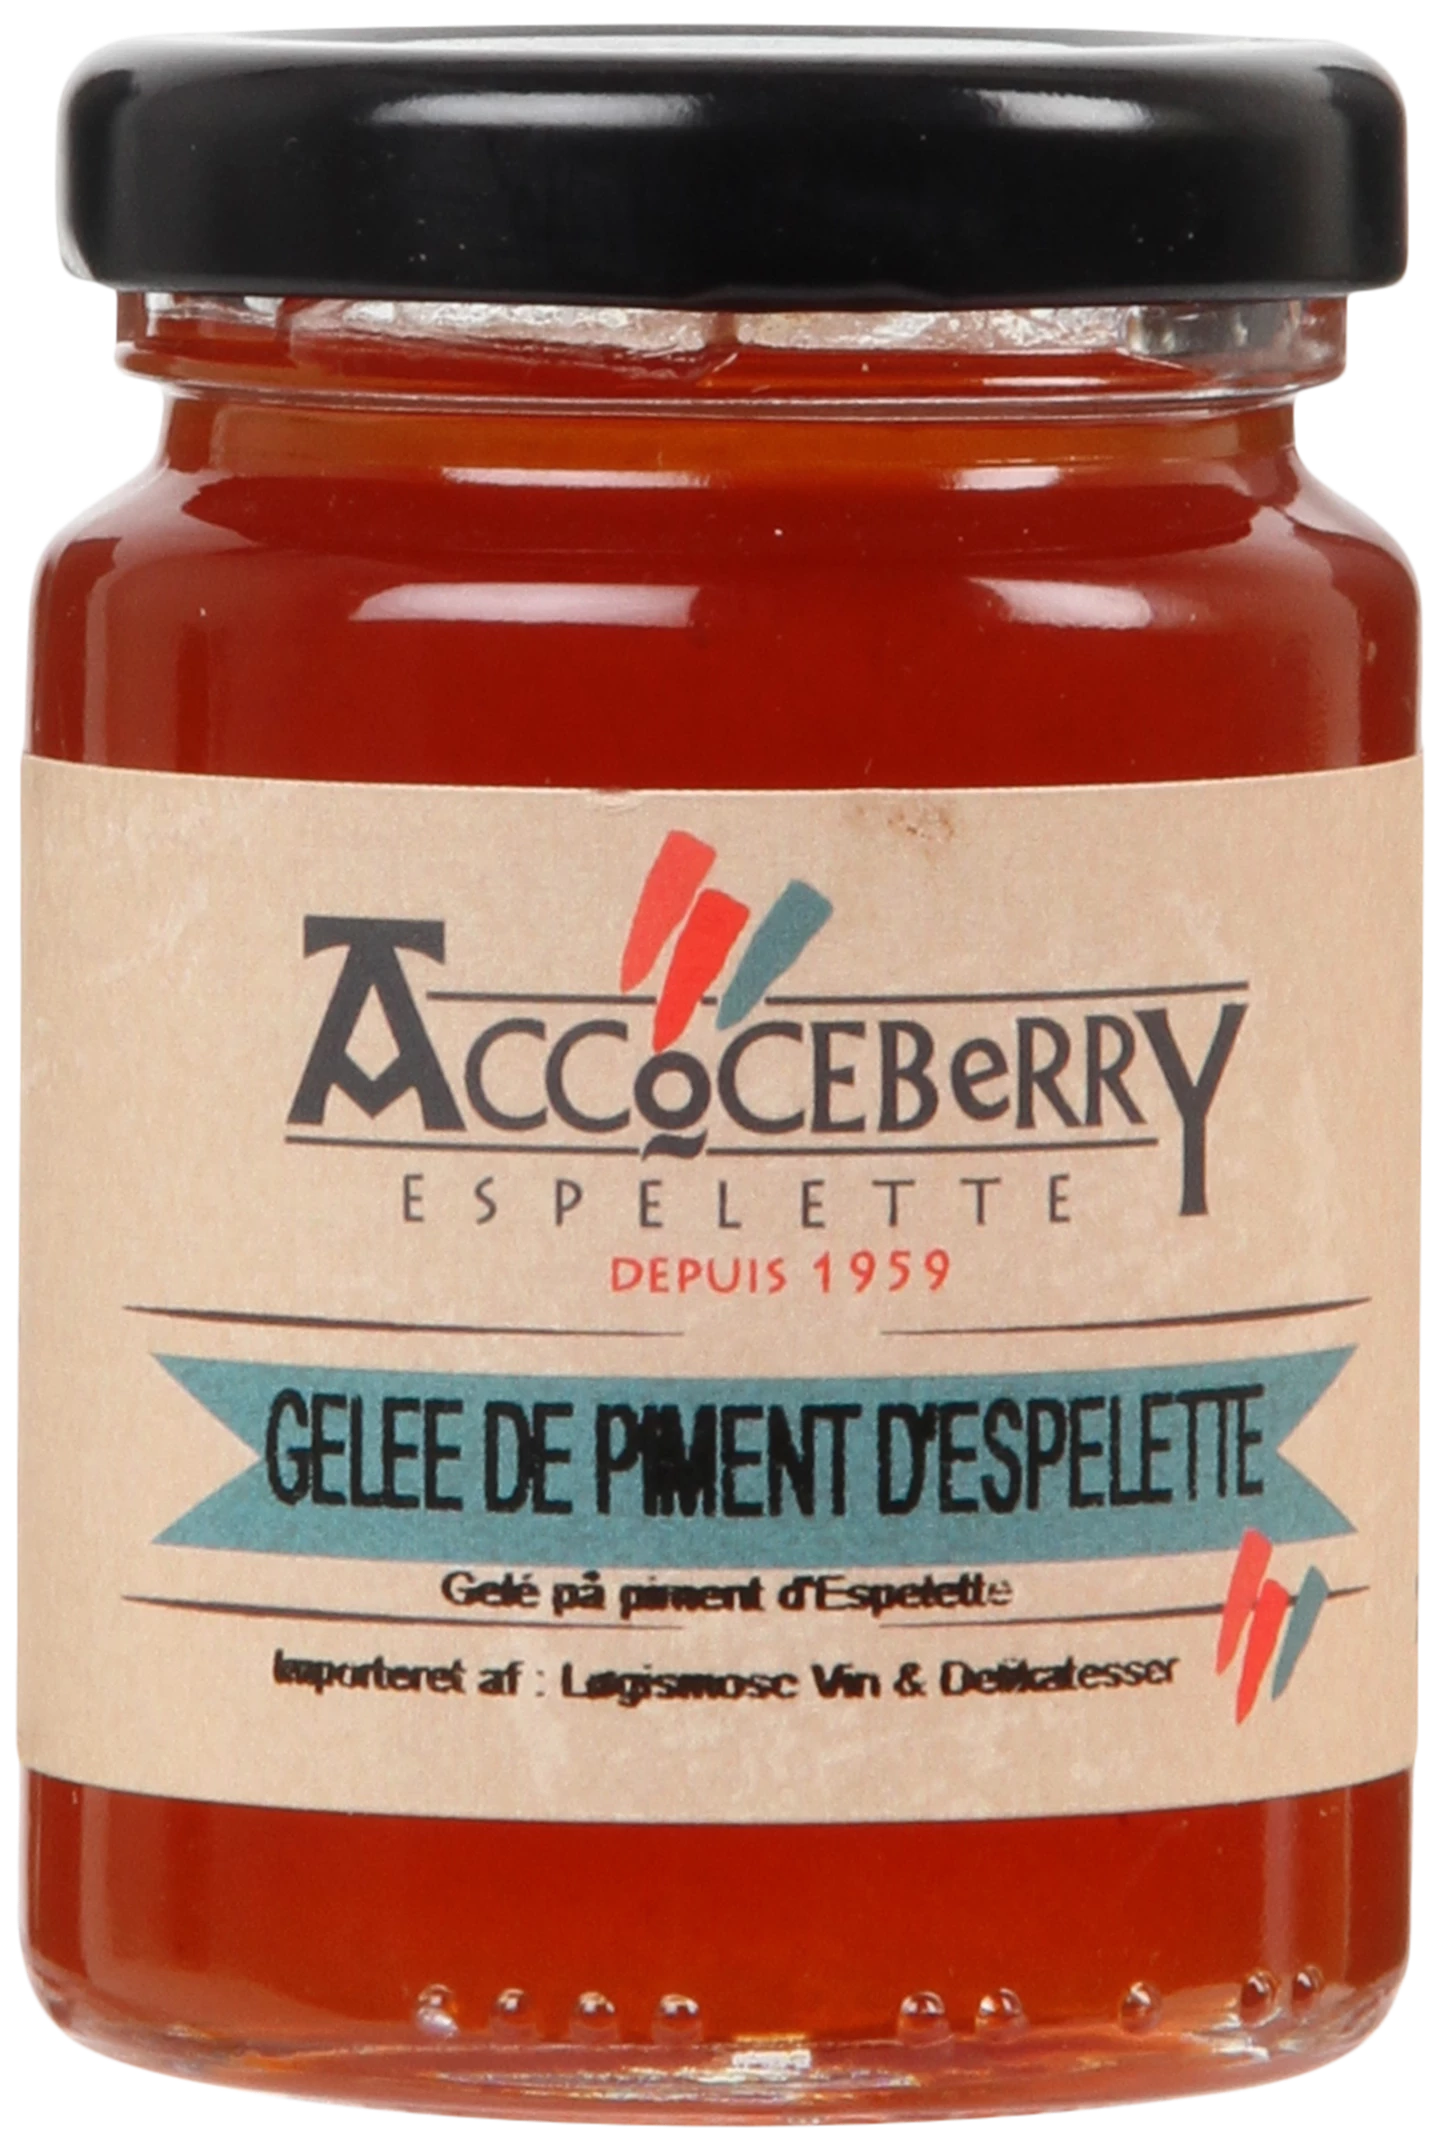 Løgismose Delikatesser Accoceberry Gele på Piment d'Espelette 100g - 128130